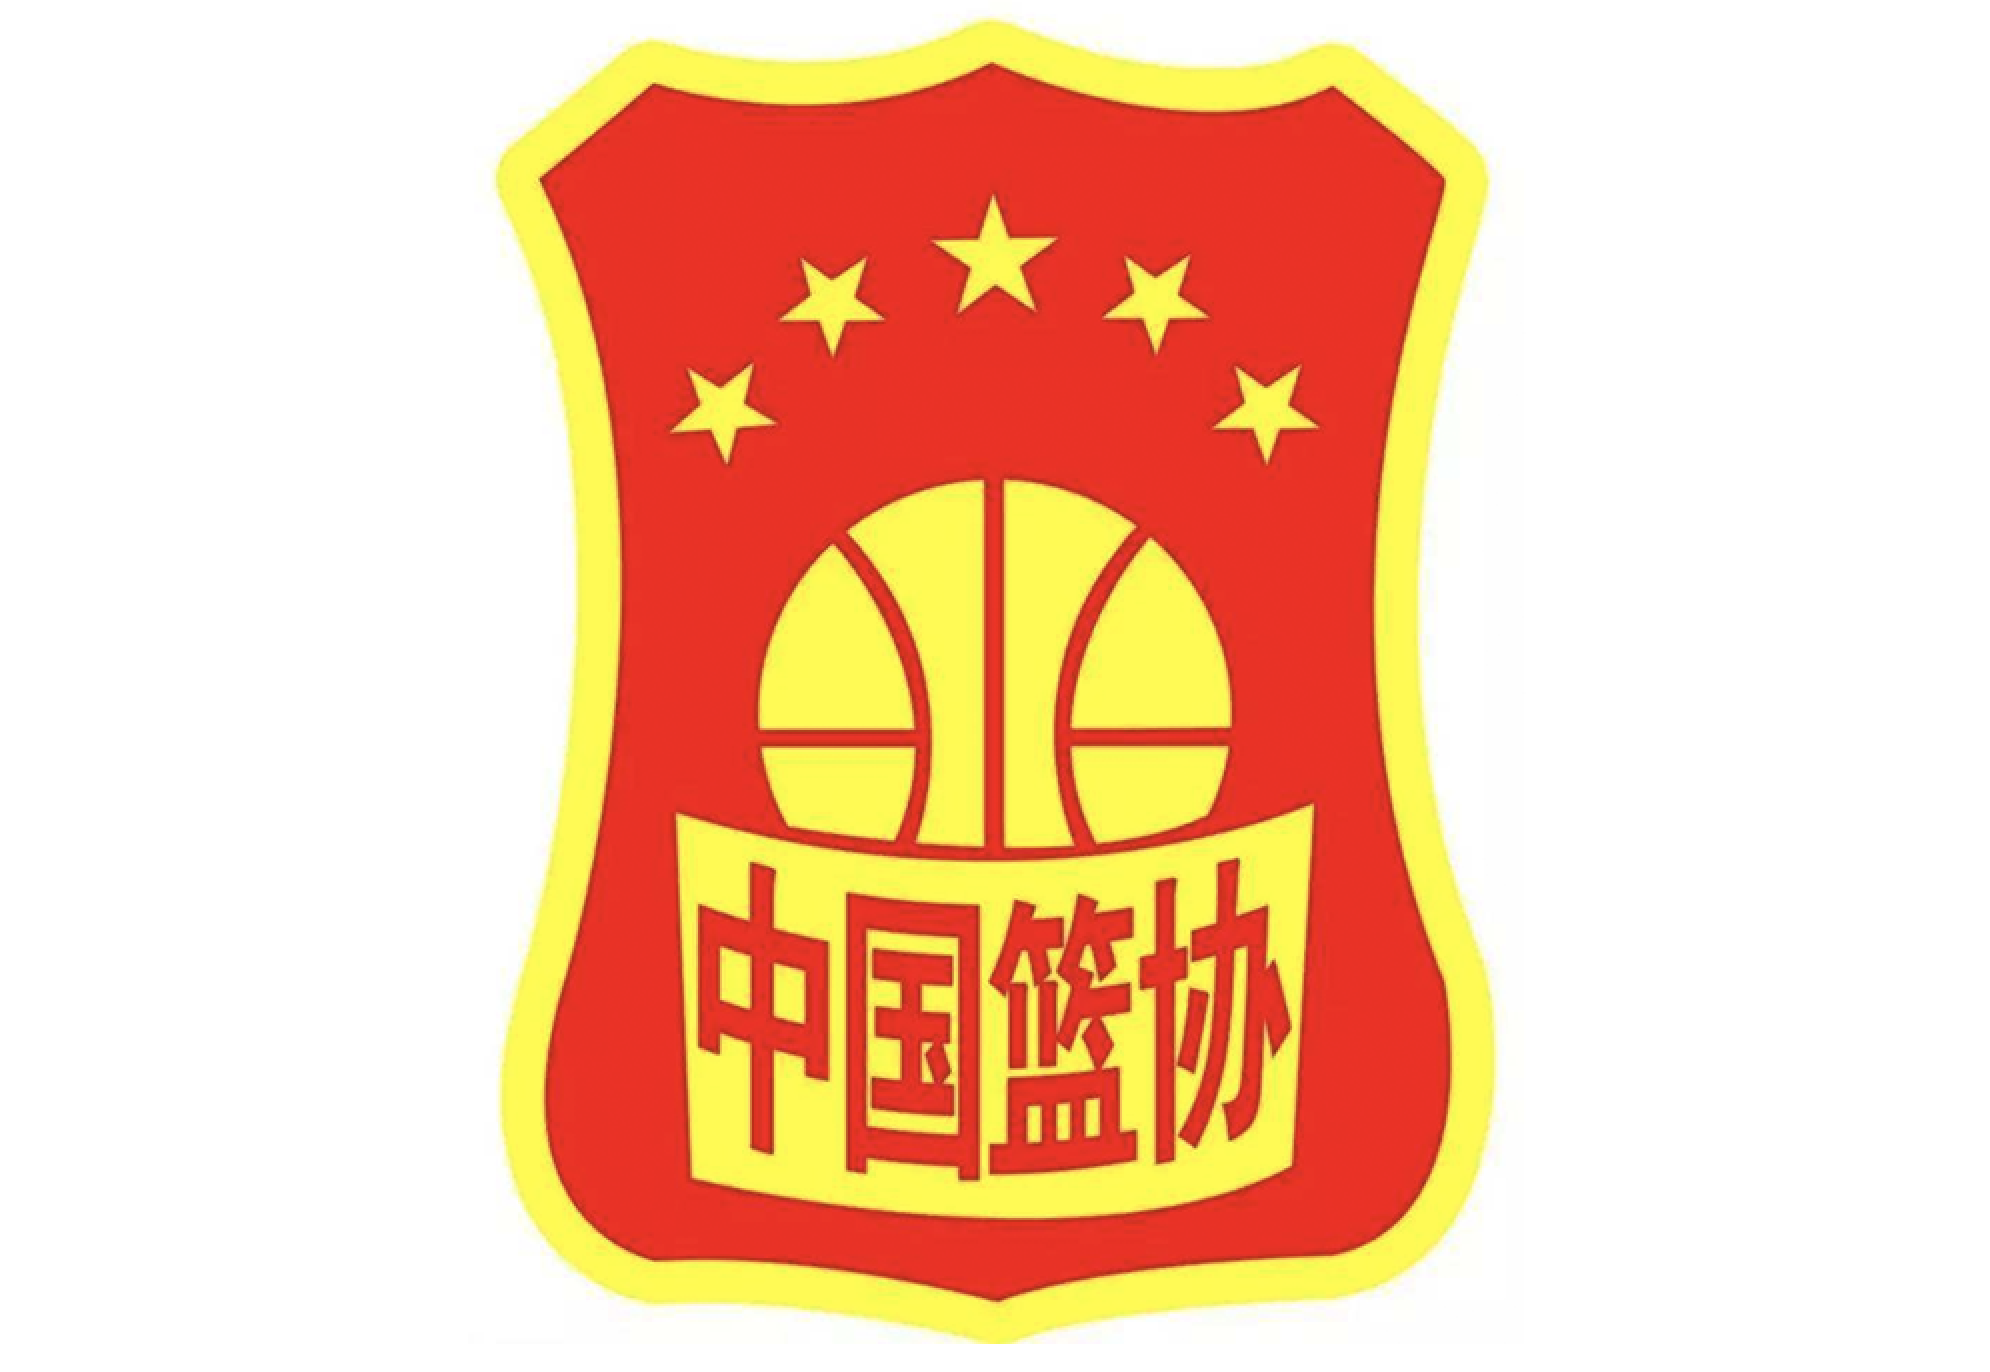 中国篮协:强烈反对莫雷言论,暂停与该球队的交流合作